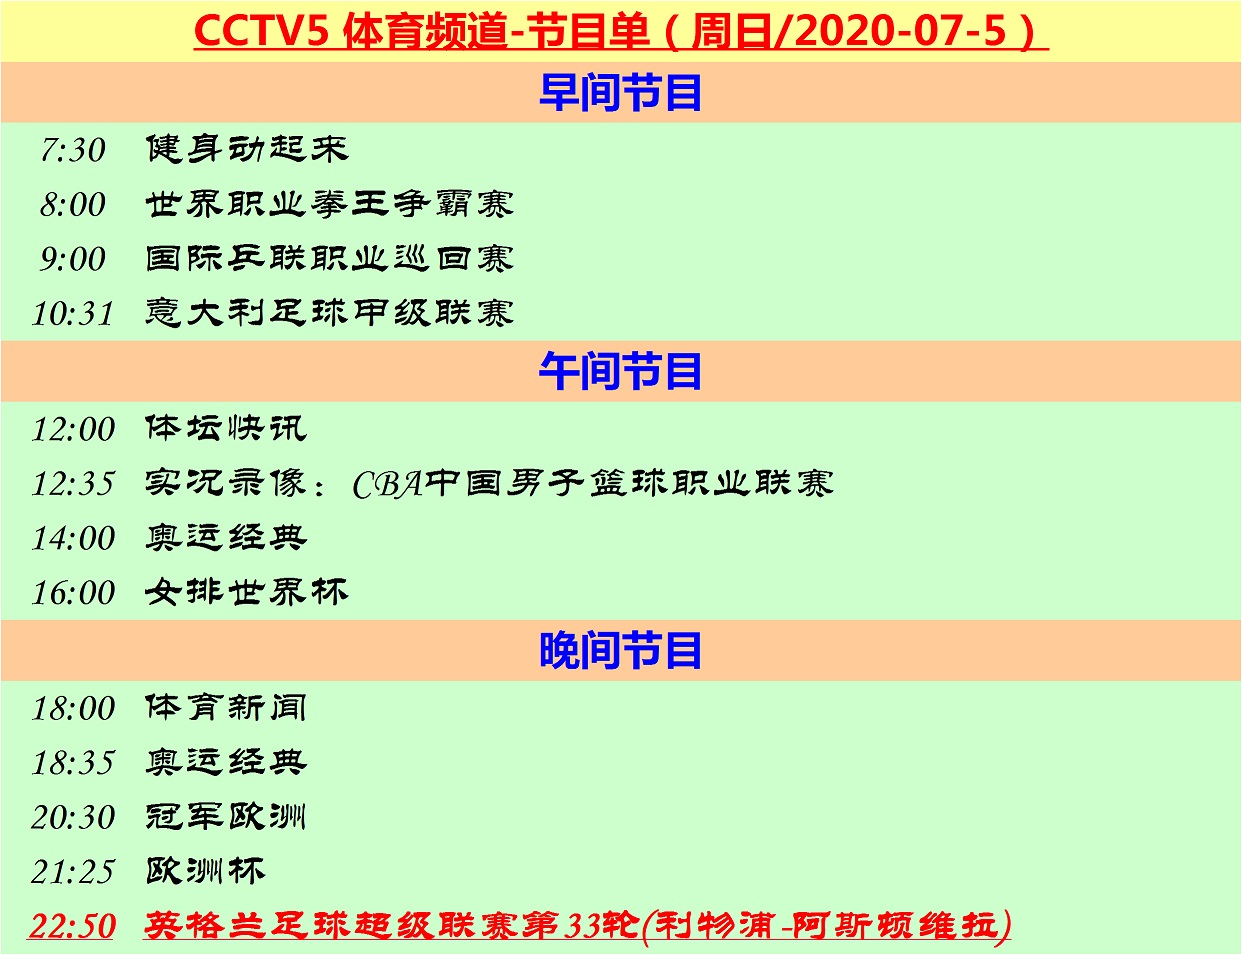 现在哪里可以看英超集锦(周日直播英超意甲：CCTV5和CCTV5 让你锁定夏日夜)